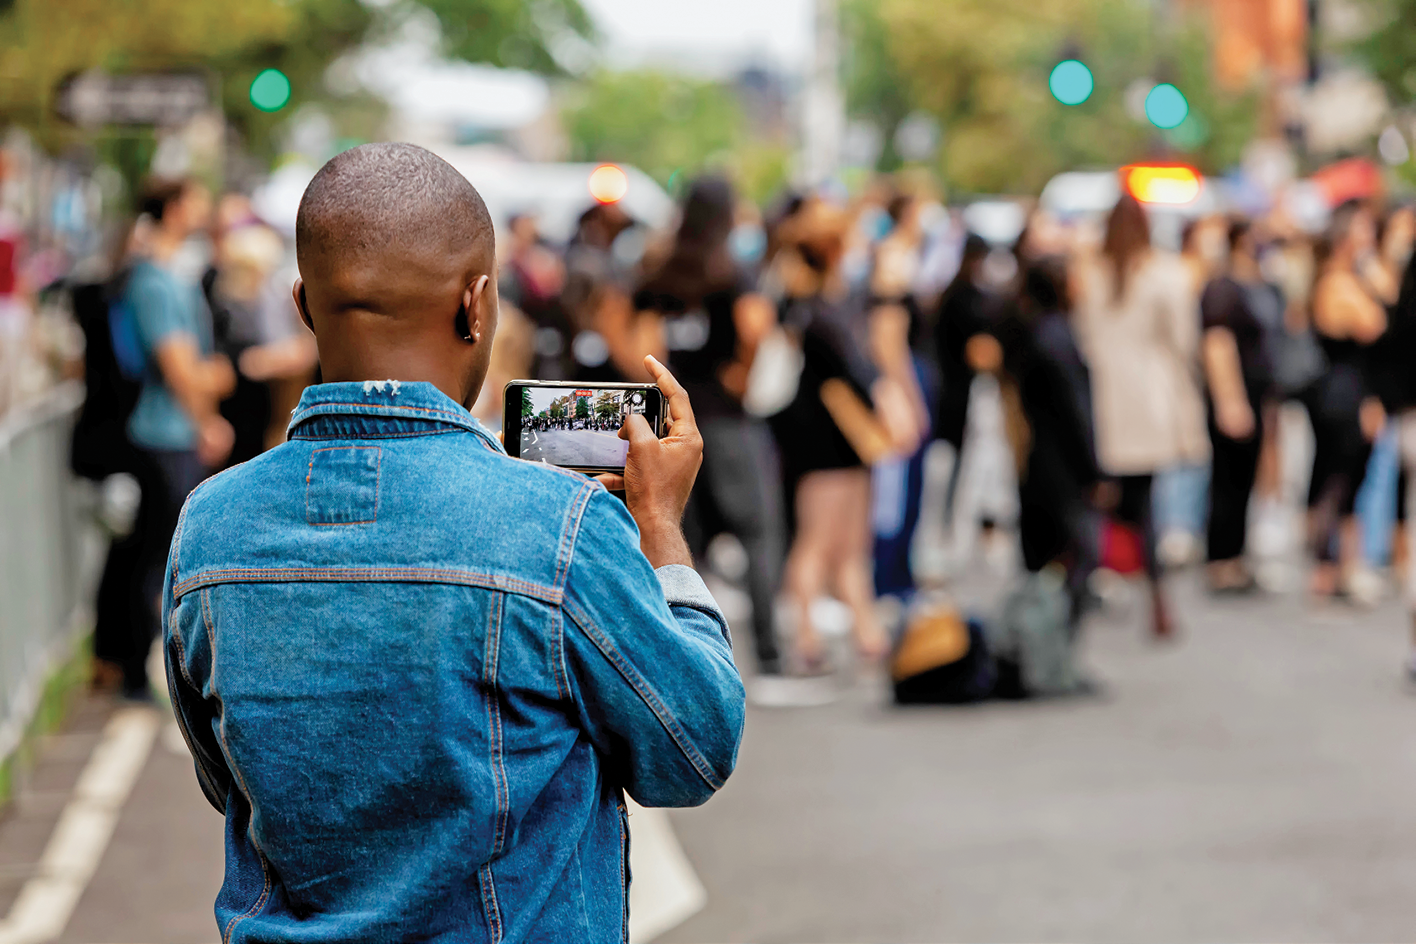 Fotografia. No primeiro plano, uma pessoa vista de costas da cintura para cima. Ela segura um celular na horizontal com a câmera aberta. À frente dela, diversas pessoas com a imagem desfocada na rua.